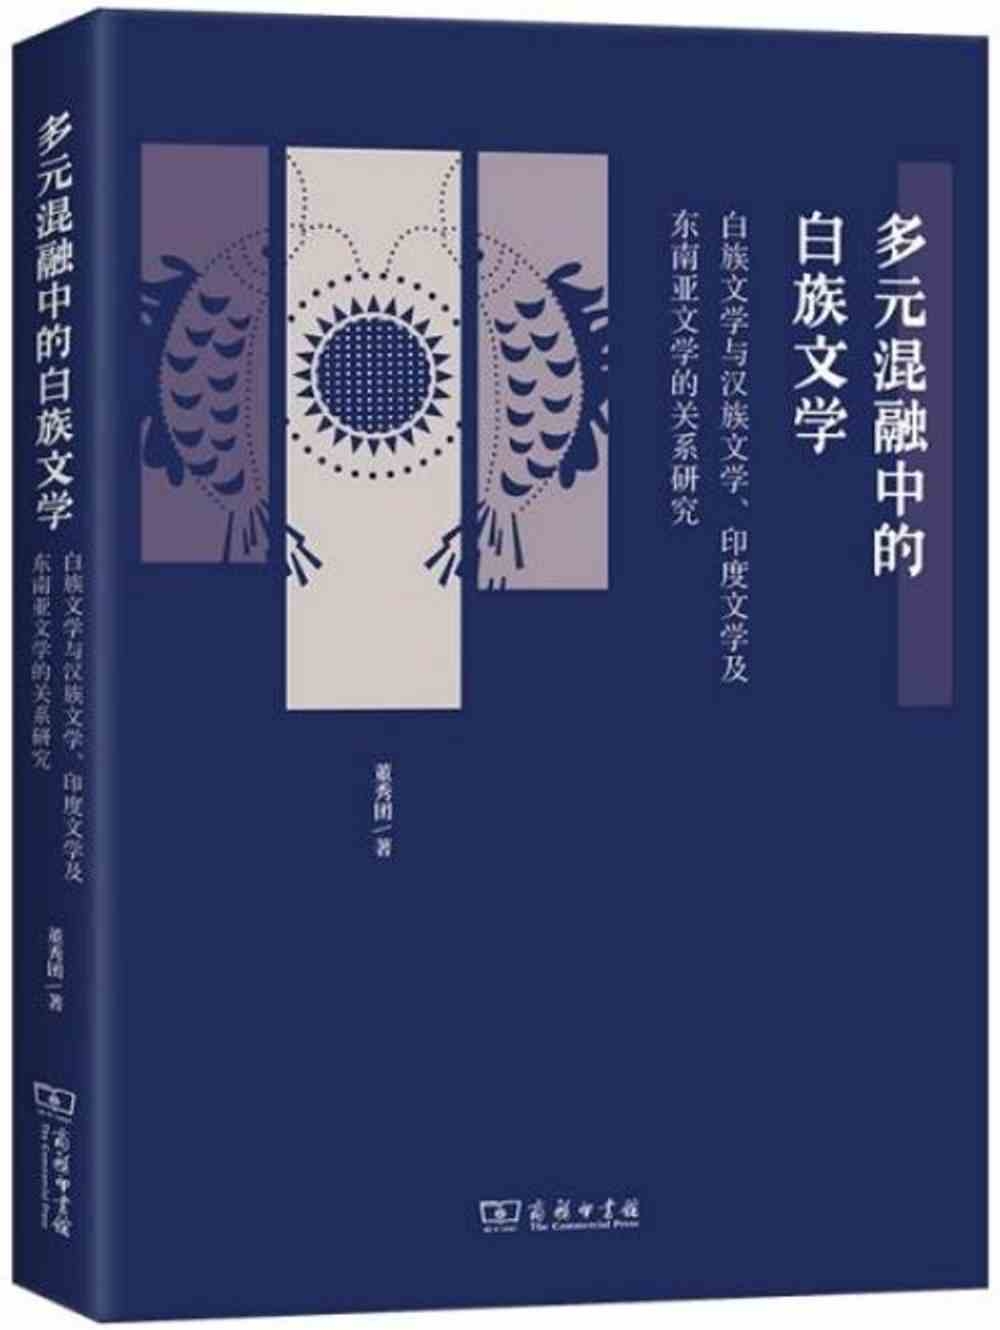 多元混融中的白族文學：白族文學與漢族文學、印度文學及東南亞文學的關係研究